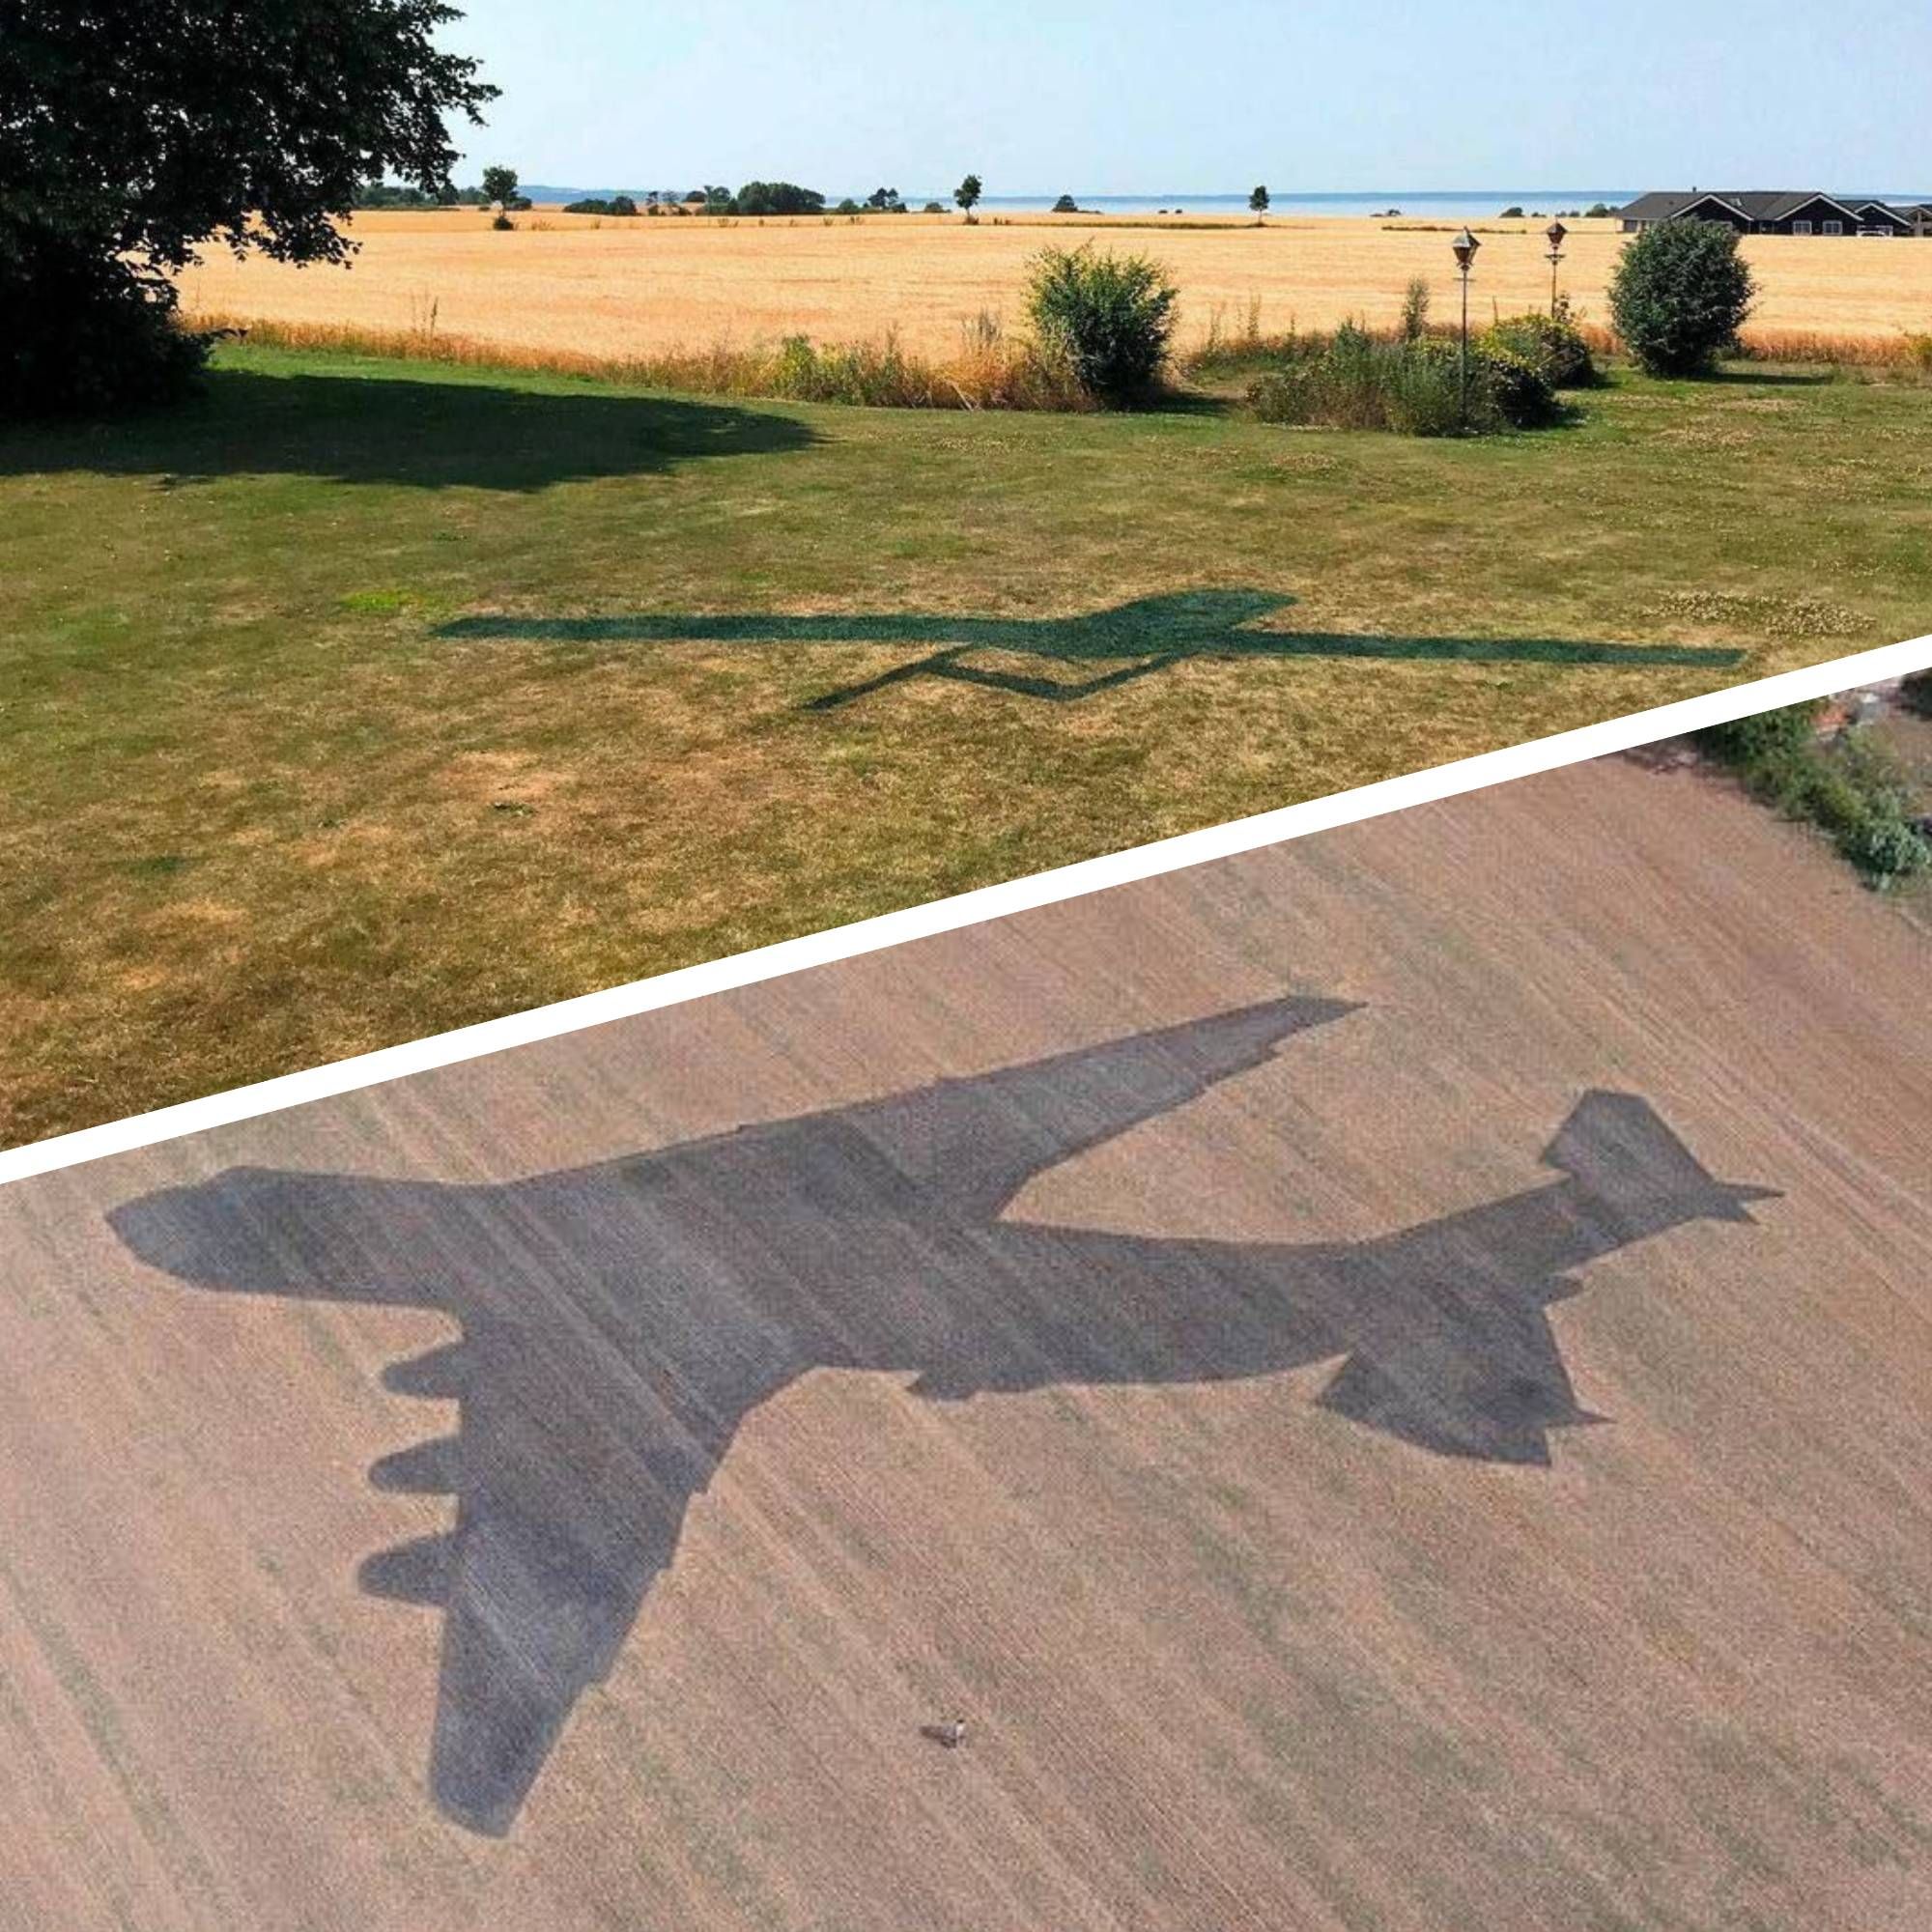 Літак Мрія - як у Данії зобразили тінь літака 